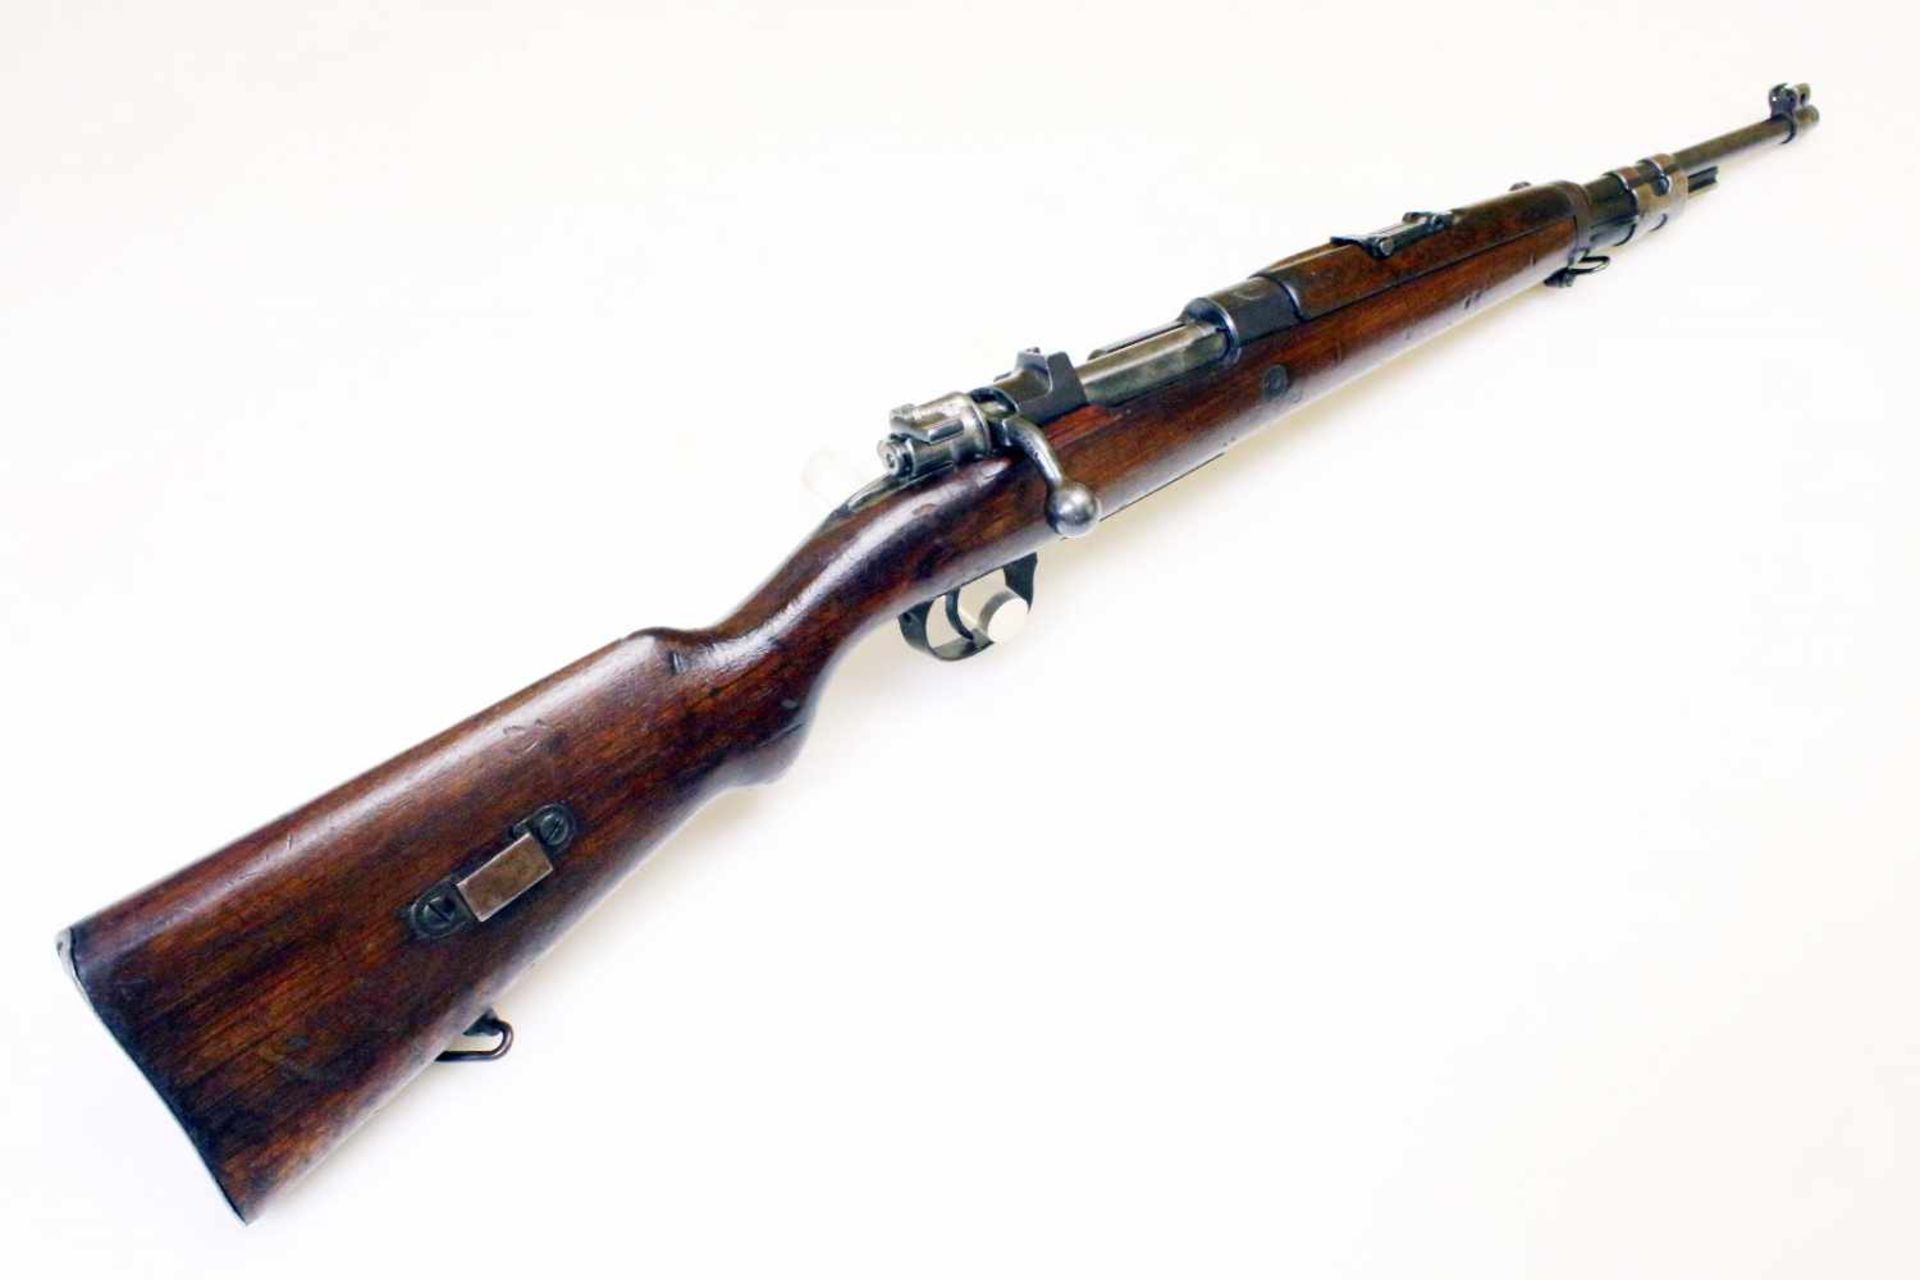 Kurzgewehr FN Mod. 1935 Cal. 7,65 x 53mm, Lauf rauh, Nr. 3301, Schloss nummerngleich. Auf der